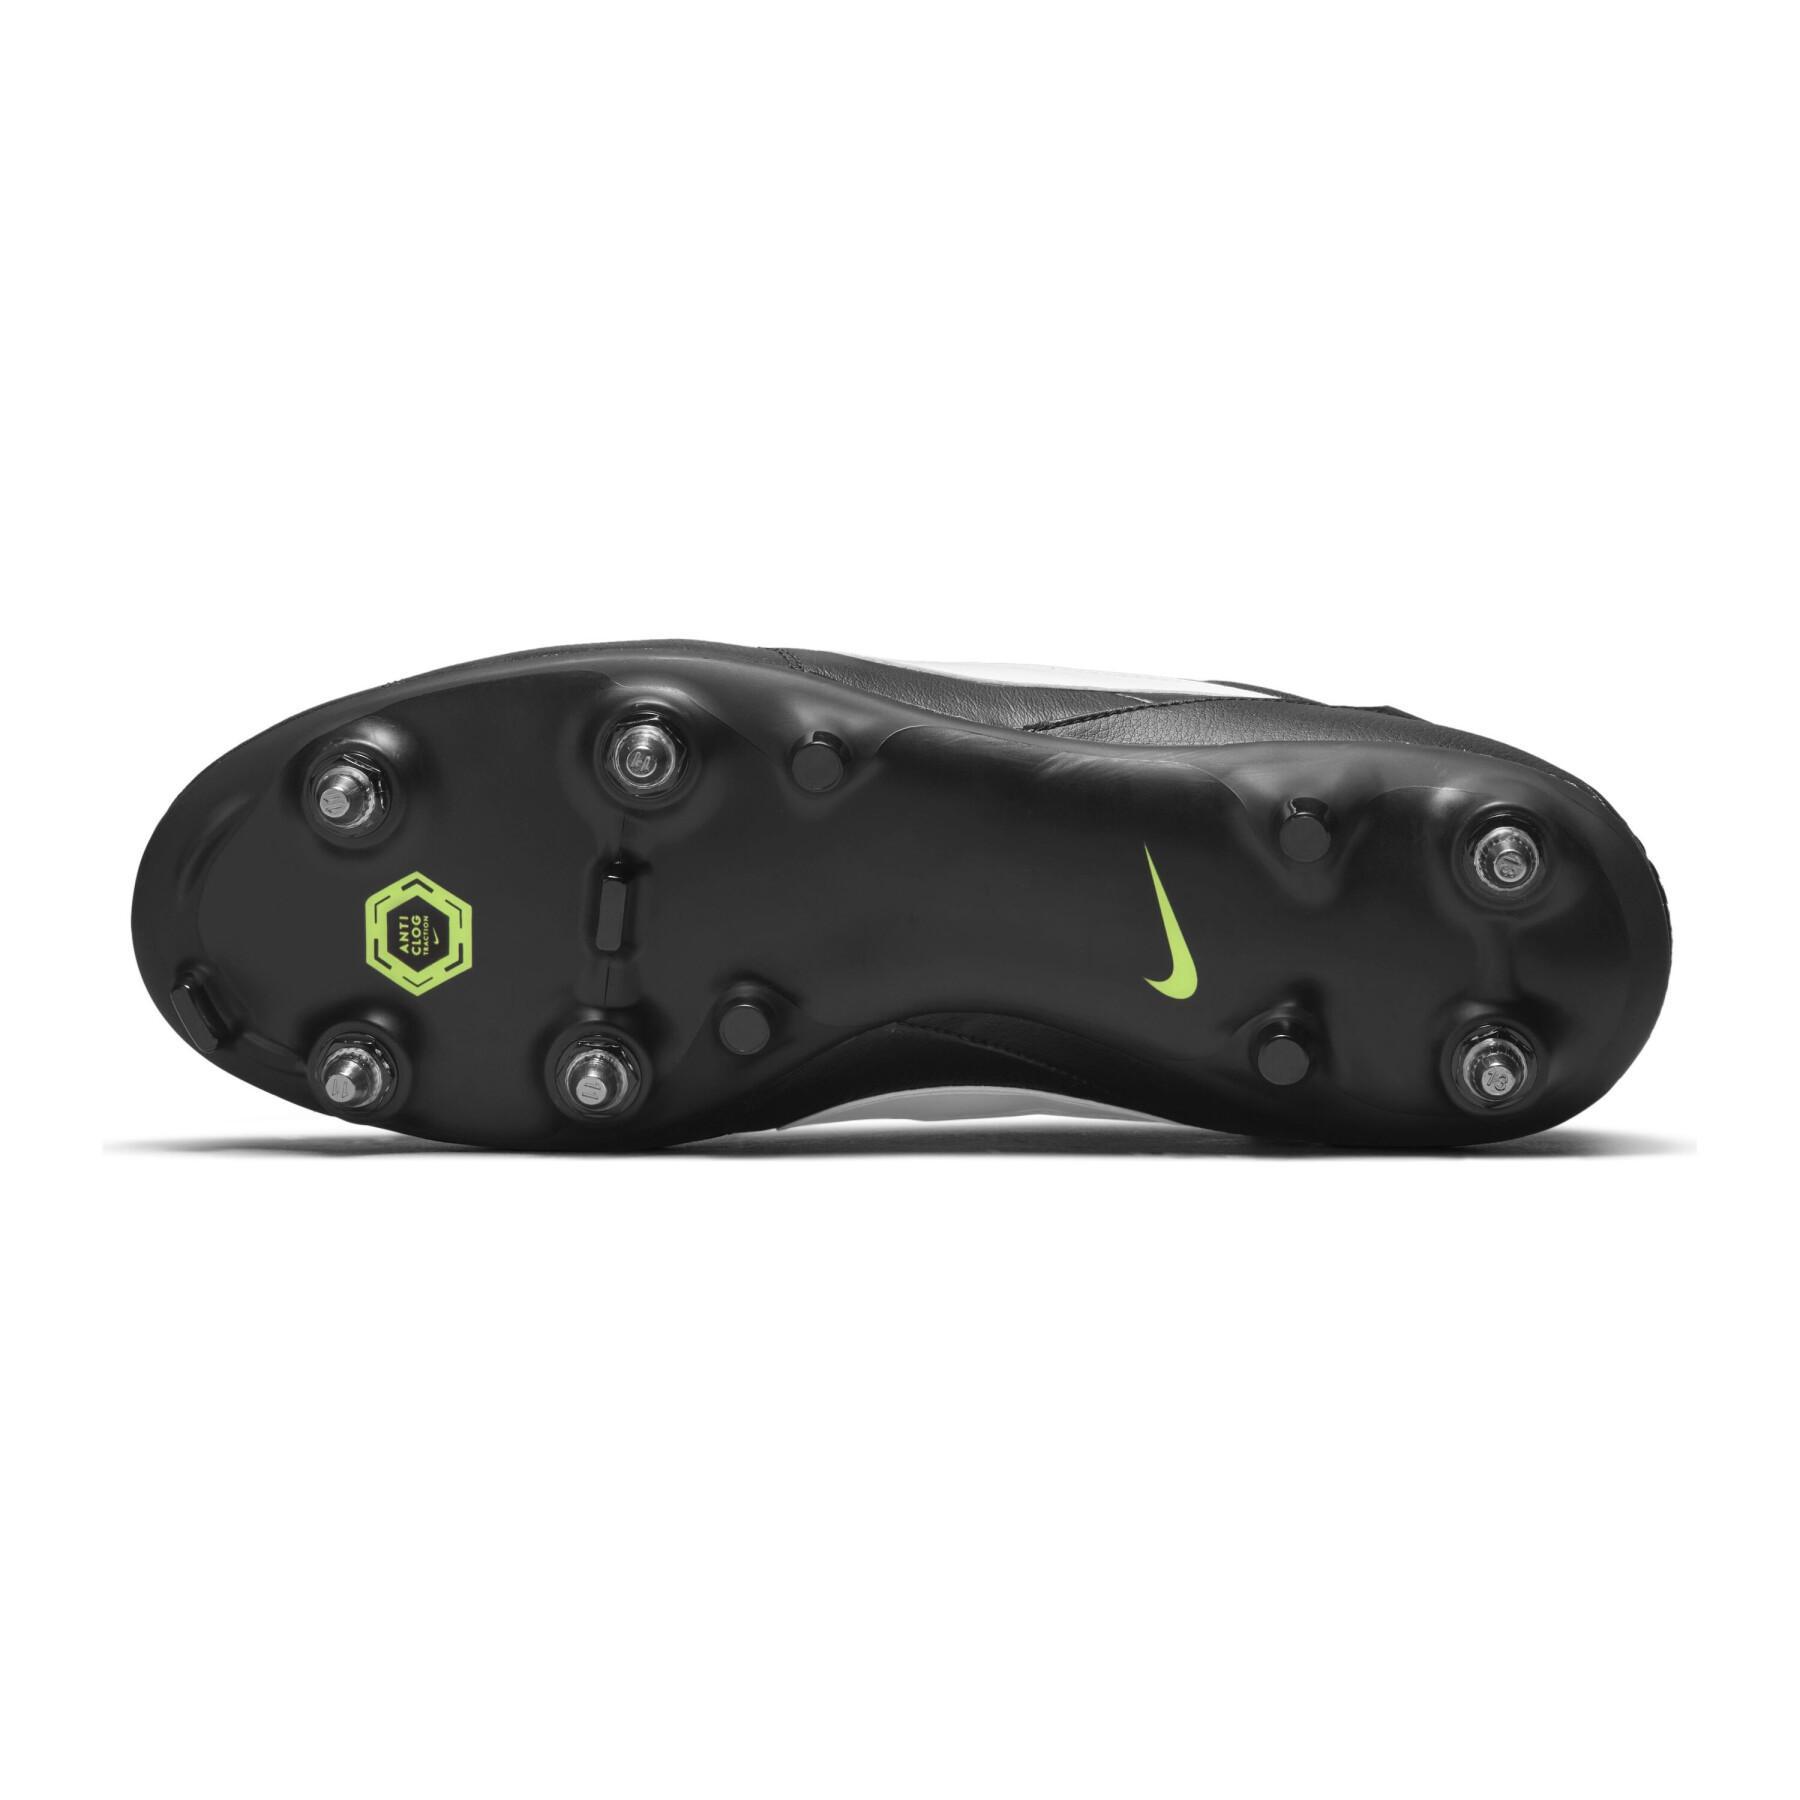 Scarpe da calcio Nike premier 3 sg-pro anti-clog traction